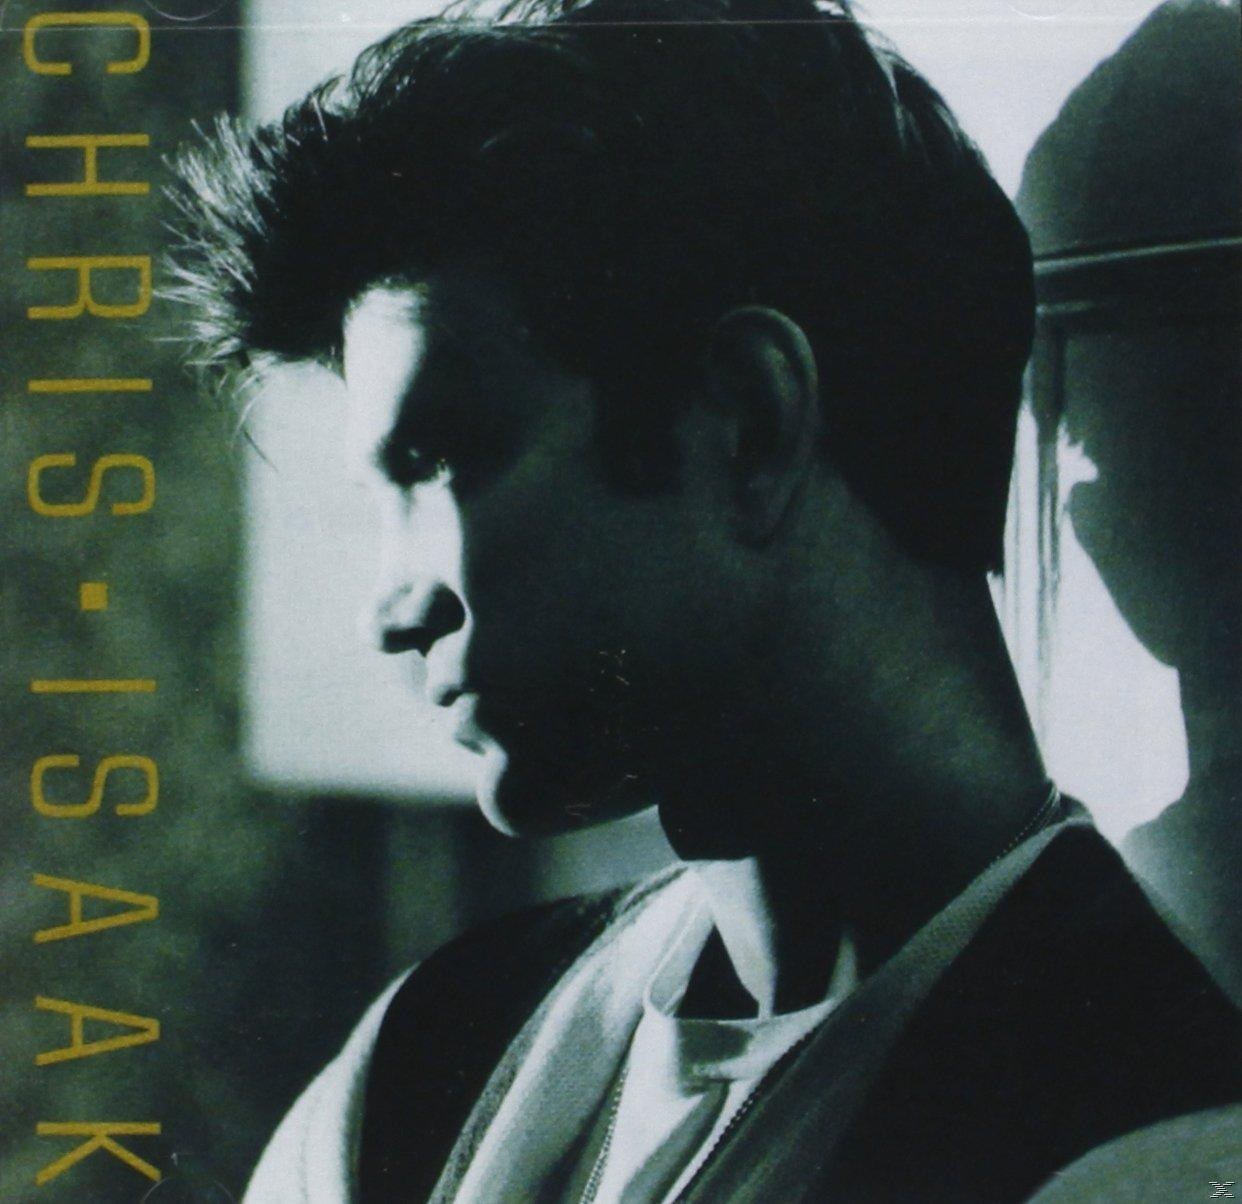 Isaak Isaak Chris - (CD) - Chris